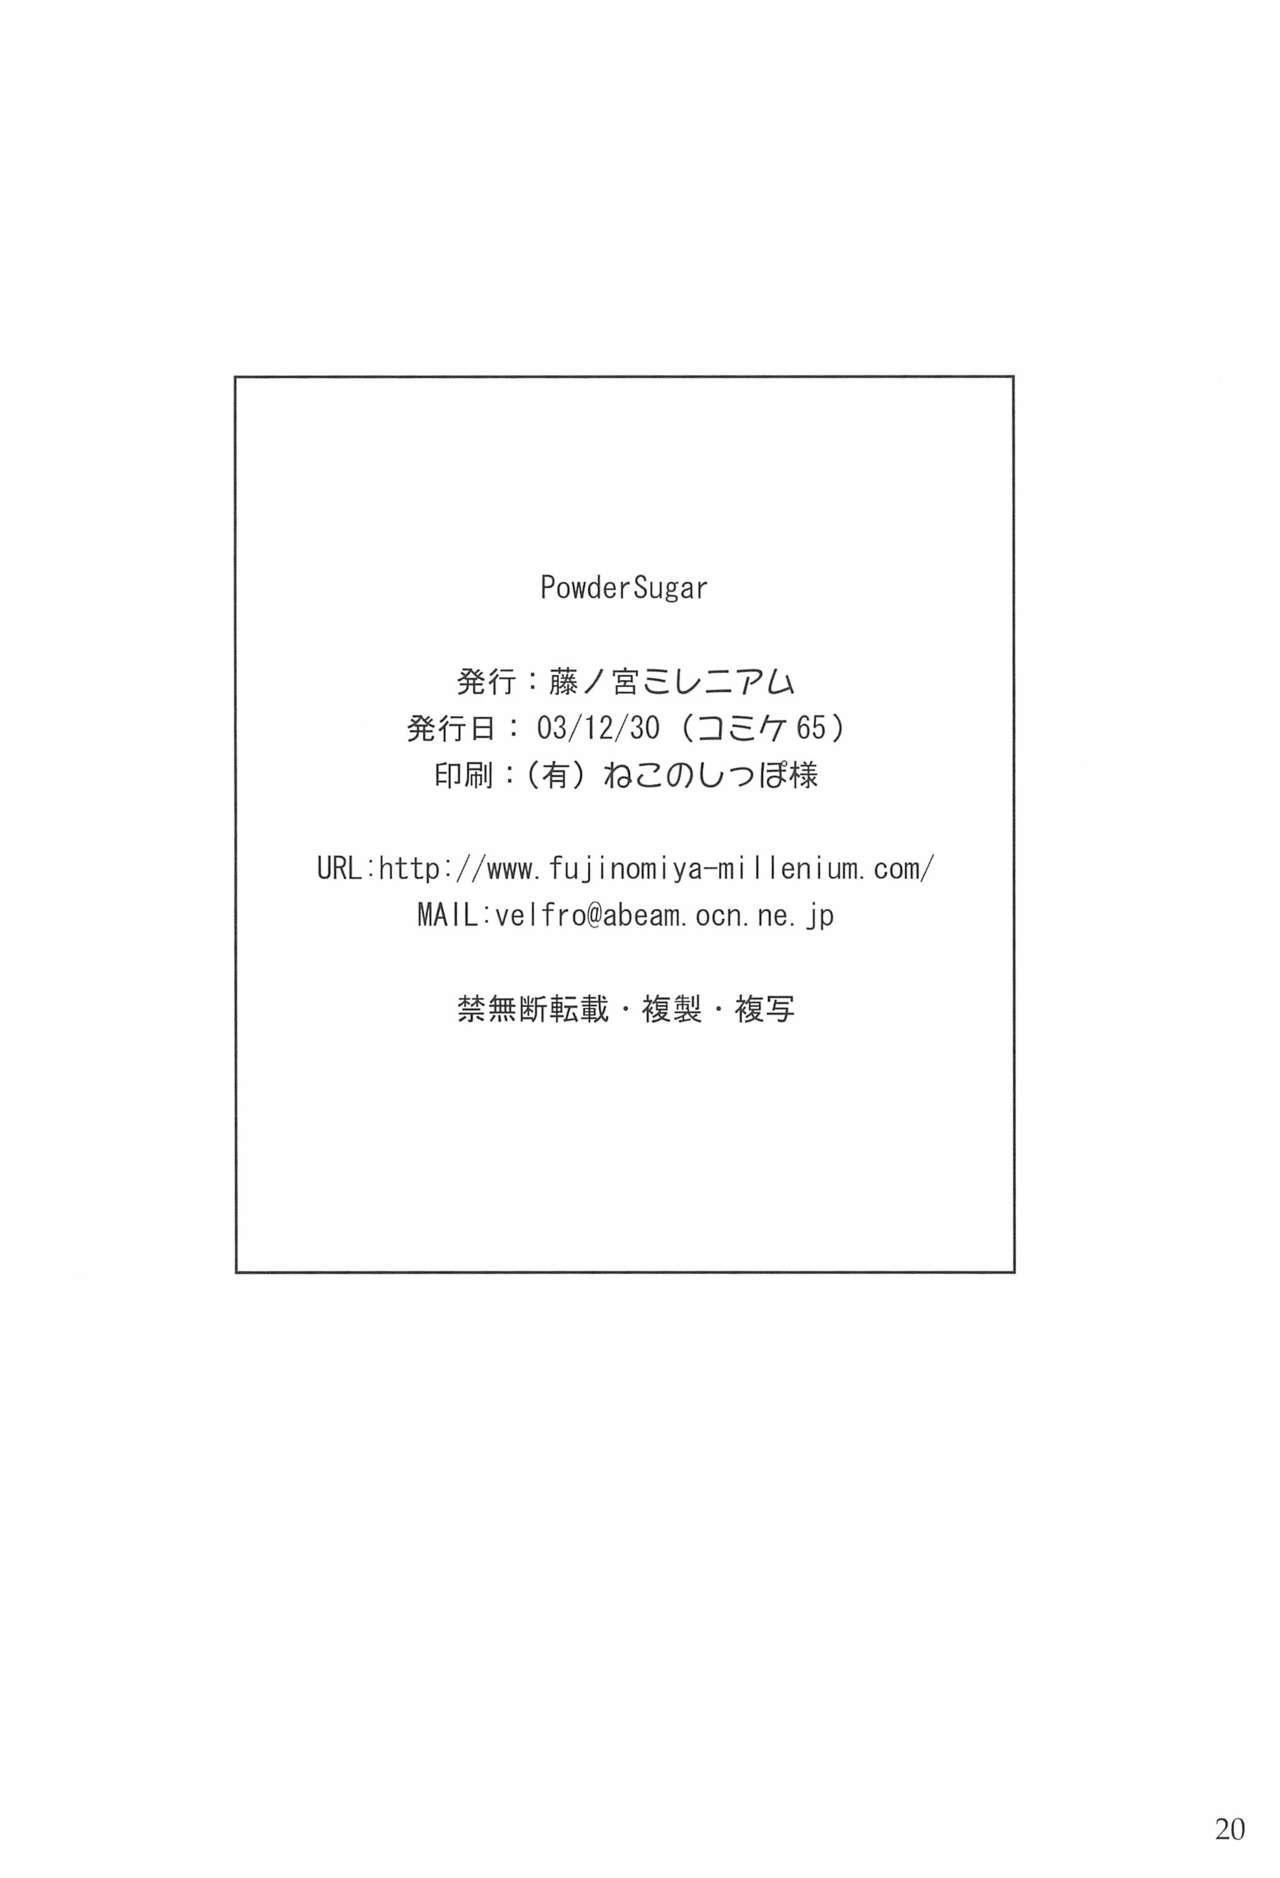 Porno 18 Powder Sugar - Ichigo mashimaro Busty - Page 20